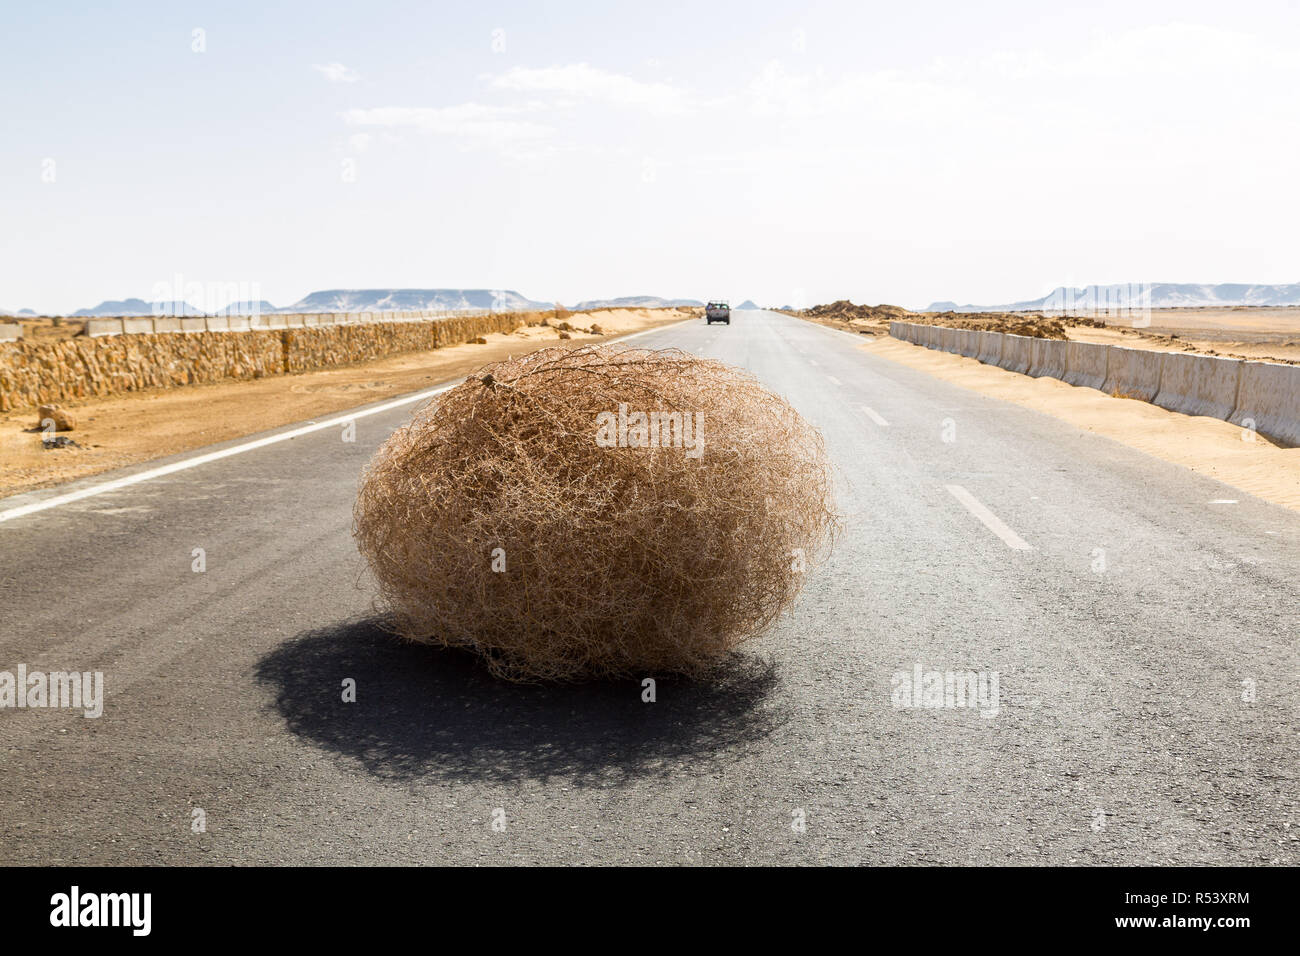 Tumbleweed géant sur l'autoroute avec des dunes de sable, entre el-Bahariya oasis Farafra oasis et al, Désert occidental de l'Égypte. Sahara occidental. Banque D'Images